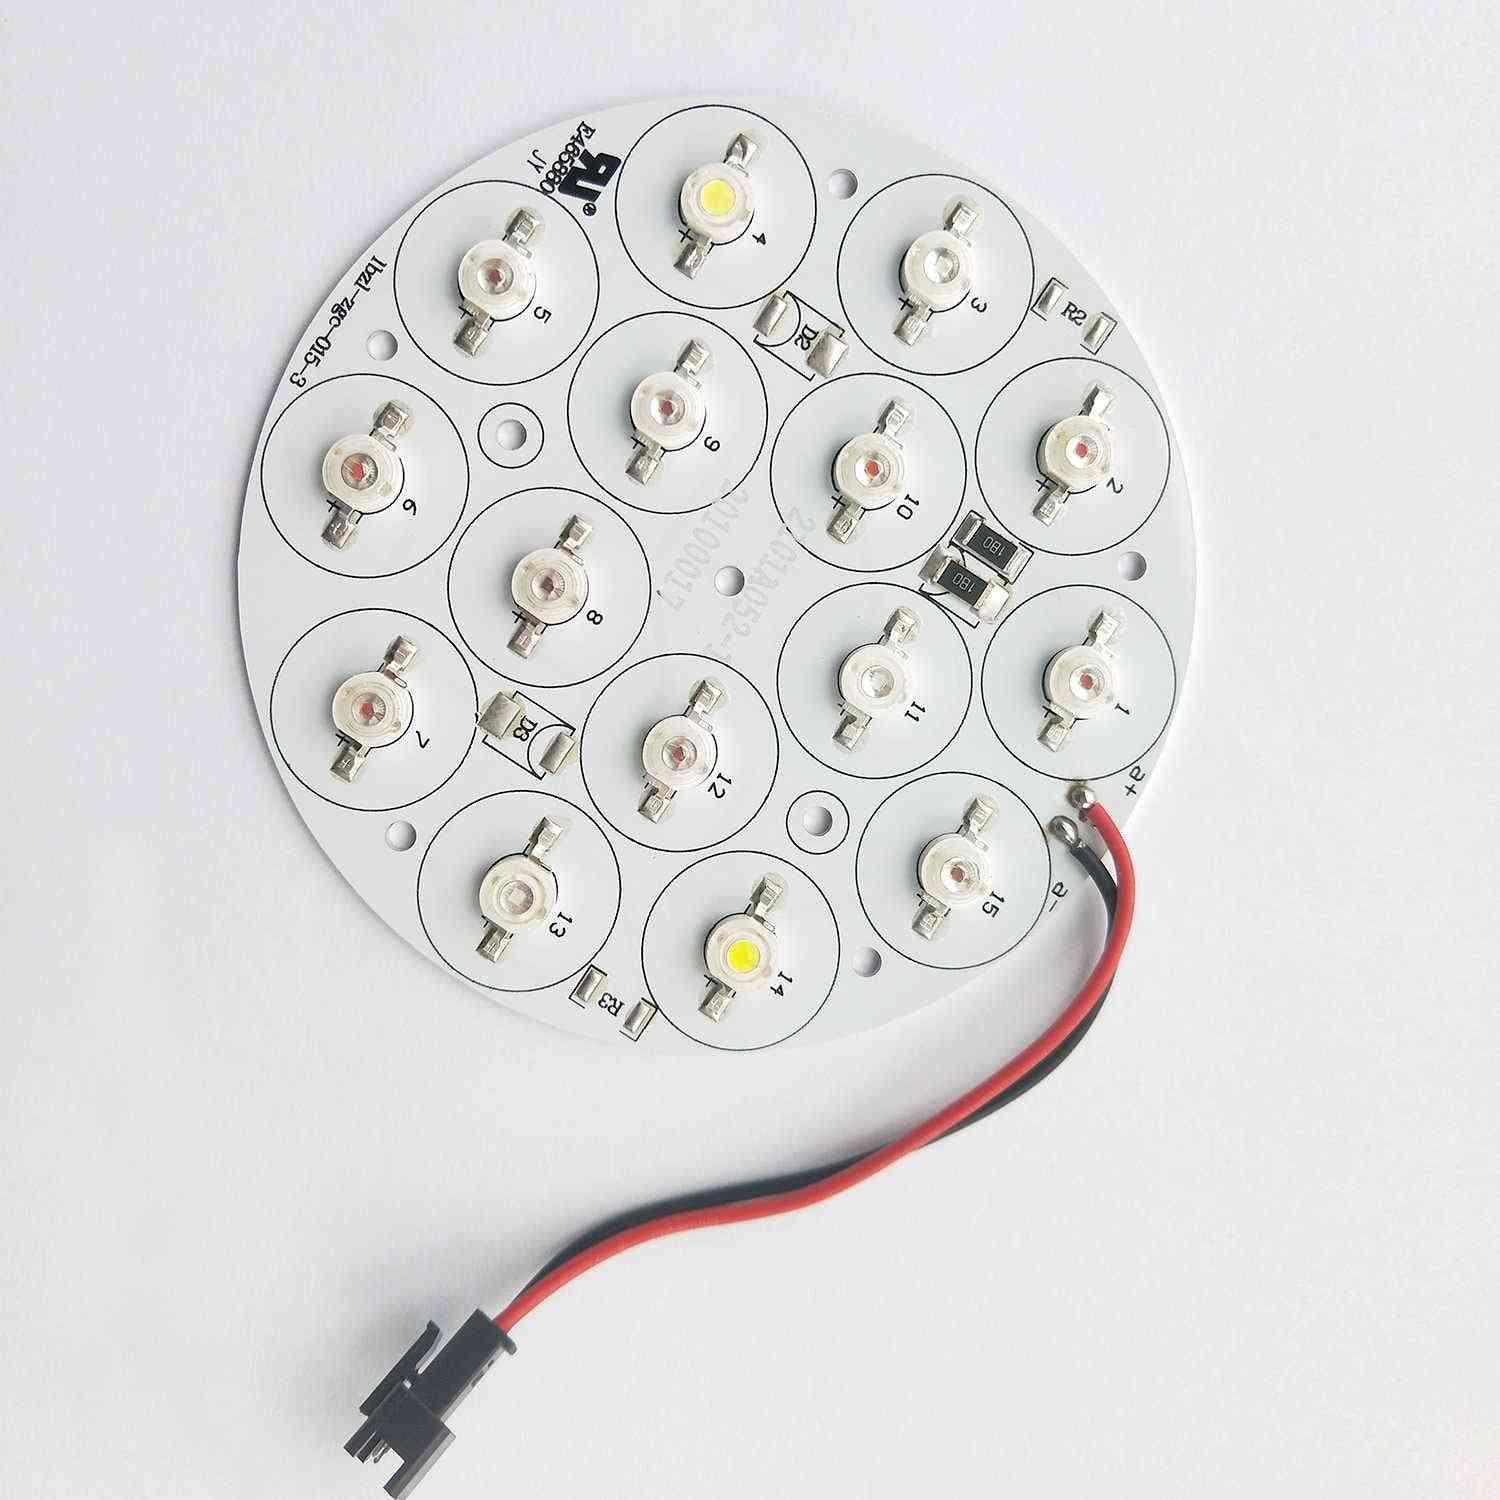 LED klastr vyměnit část pěstovat světelné příslušenství